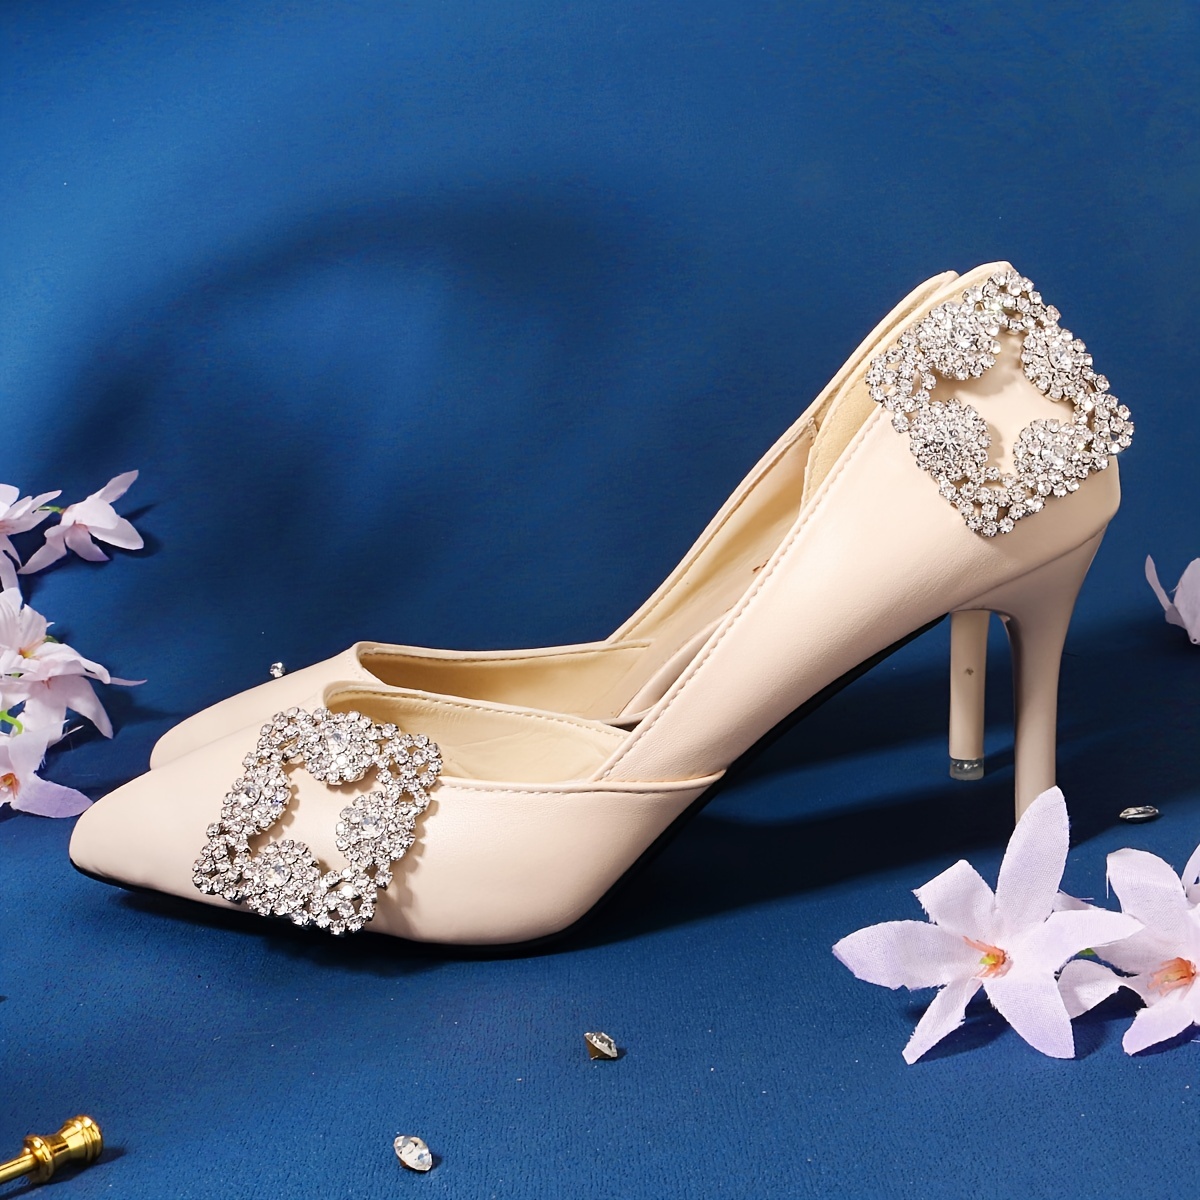 Shoe Clip, Bridal Shoe Clip, Wedding Shoe Clip, Pearl Shoe Clip, Rhinestone Shoe Clip, Sparkling Shoe Clip